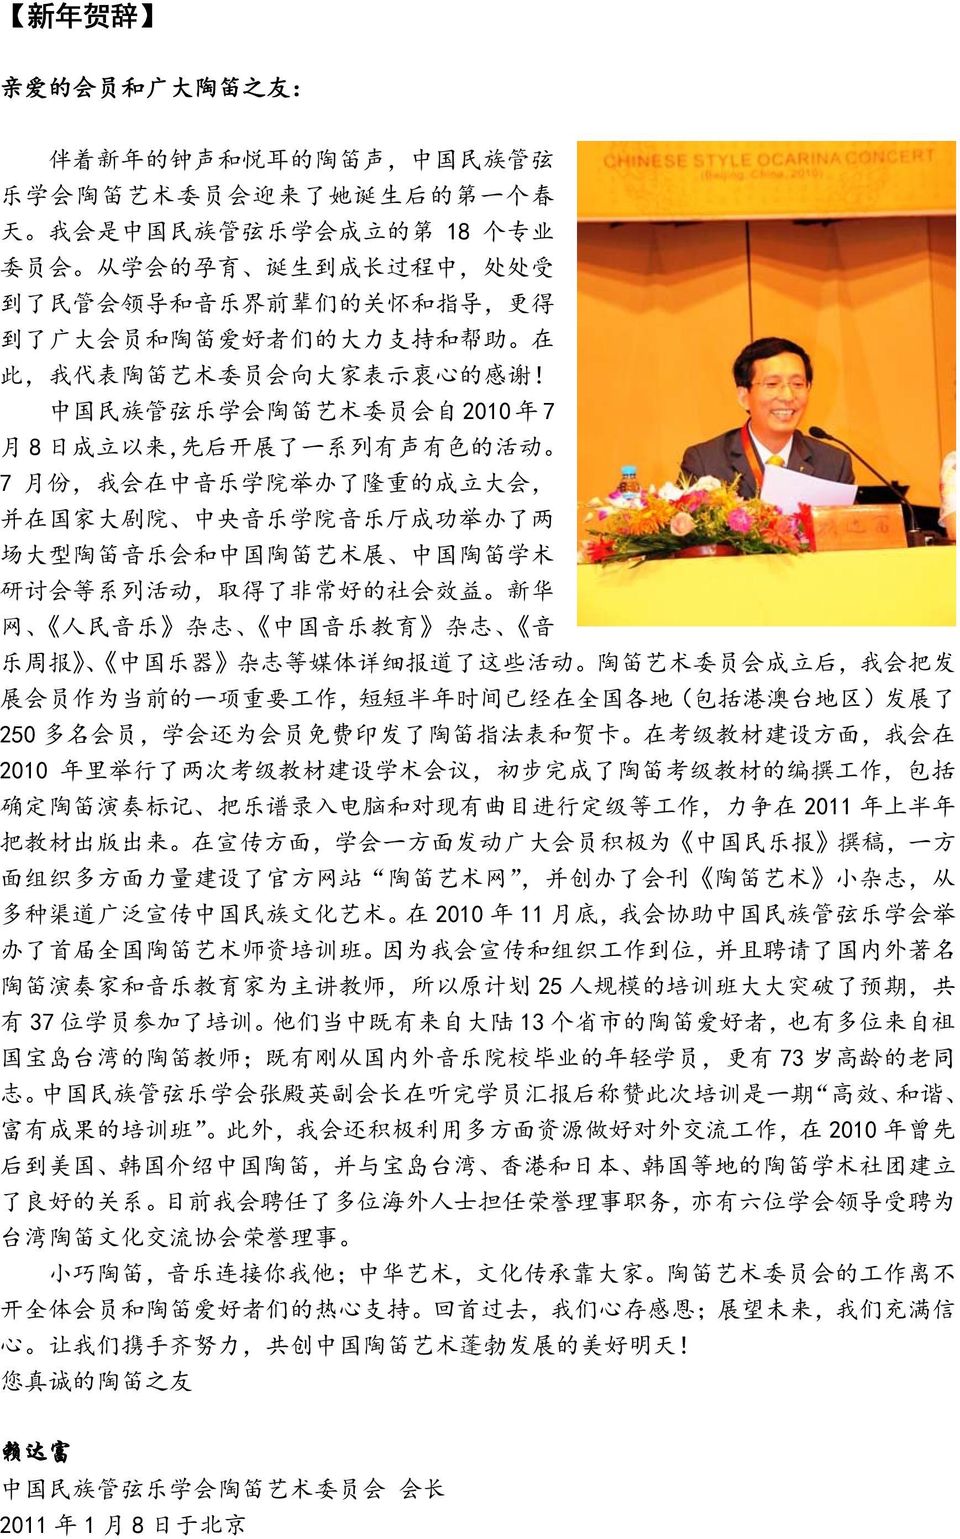 中 国 民 族 管 弦 乐 学 会 陶 笛 艺 术 委 员 会 自 2010 年 7 月 8 日 成 立 以 来, 先 后 开 展 了 一 系 列 有 声 有 色 的 活 动 7 月 份, 我 会 在 中 音 乐 学 院 举 办 了 隆 重 的 成 立 大 会, 并 在 国 家 大 剧 院 中 央 音 乐 学 院 音 乐 厅 成 功 举 办 了 两 场 大 型 陶 笛 音 乐 会 和 中 国 陶